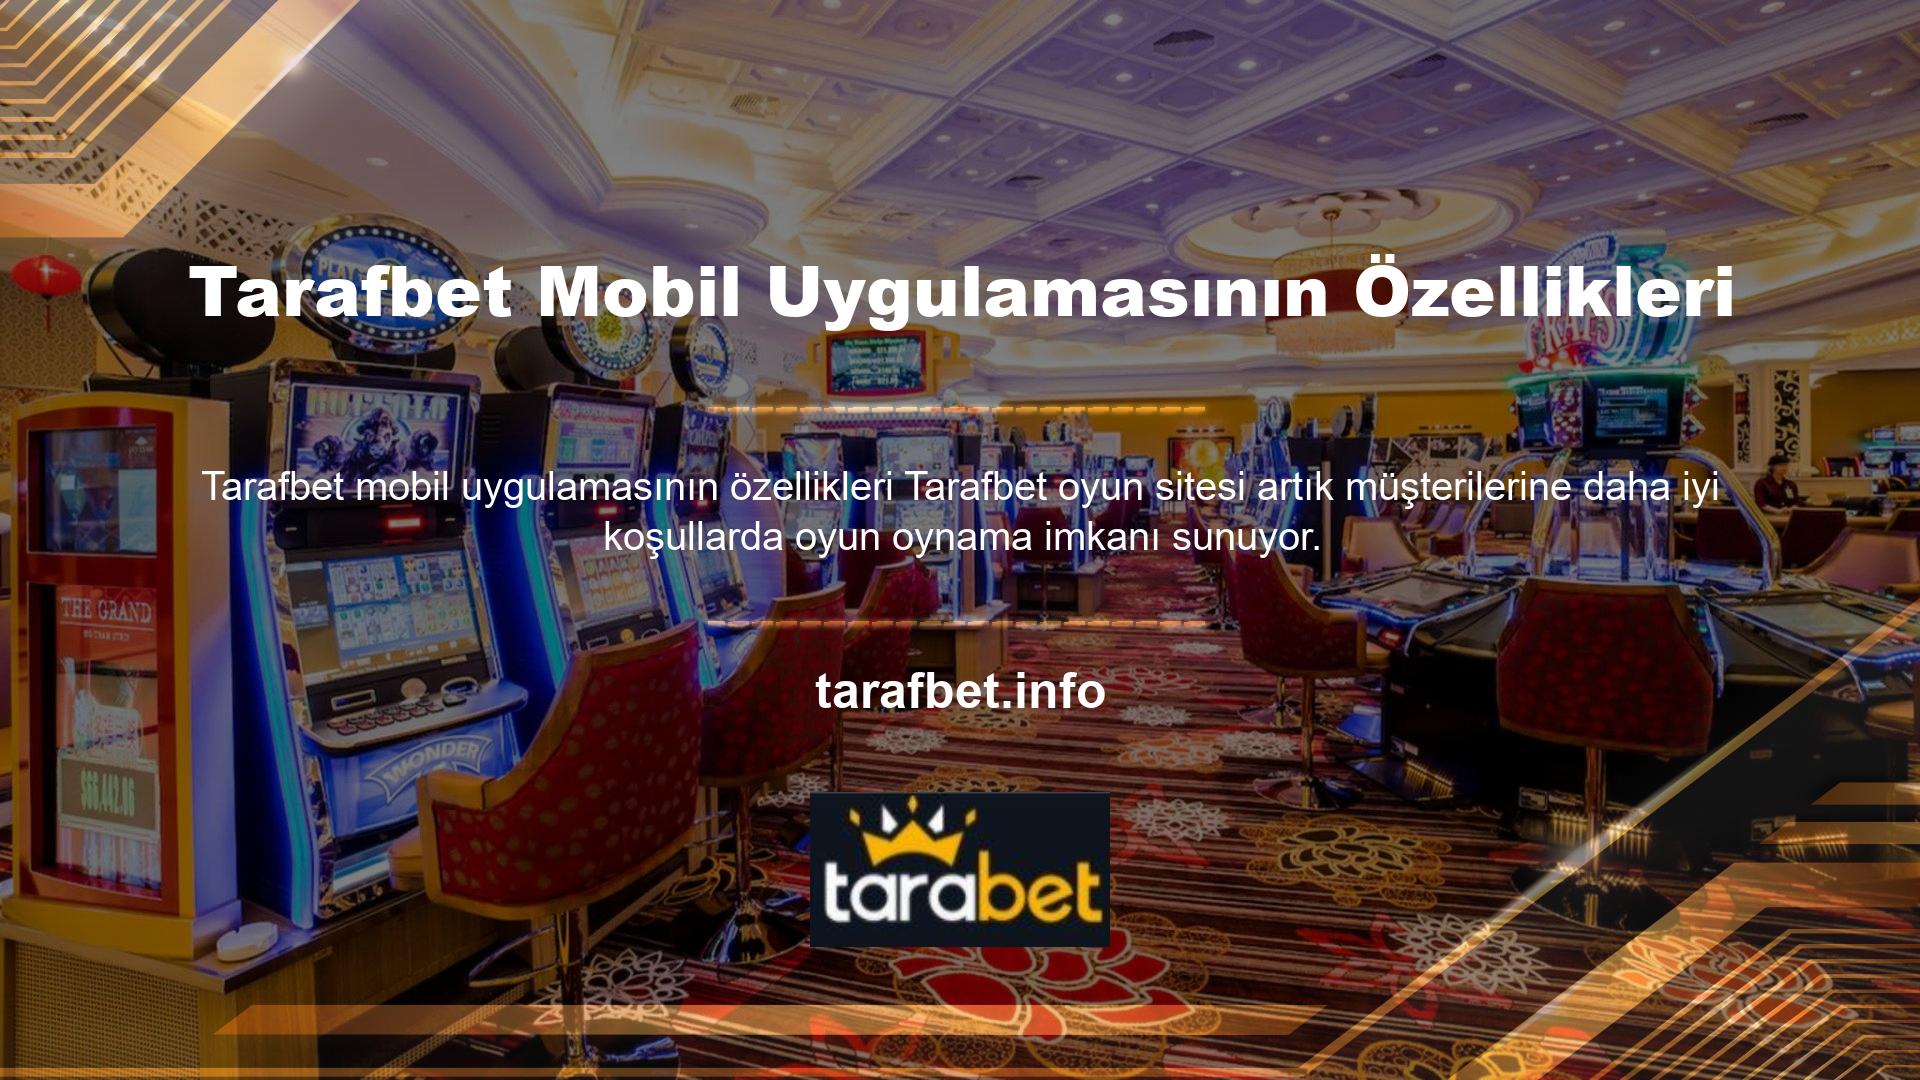 Ancak Tarafbet Casino web sitesinin mobil uygulama özelliğinin aynı zamanda mobil uygulaması da bulunmaktadır